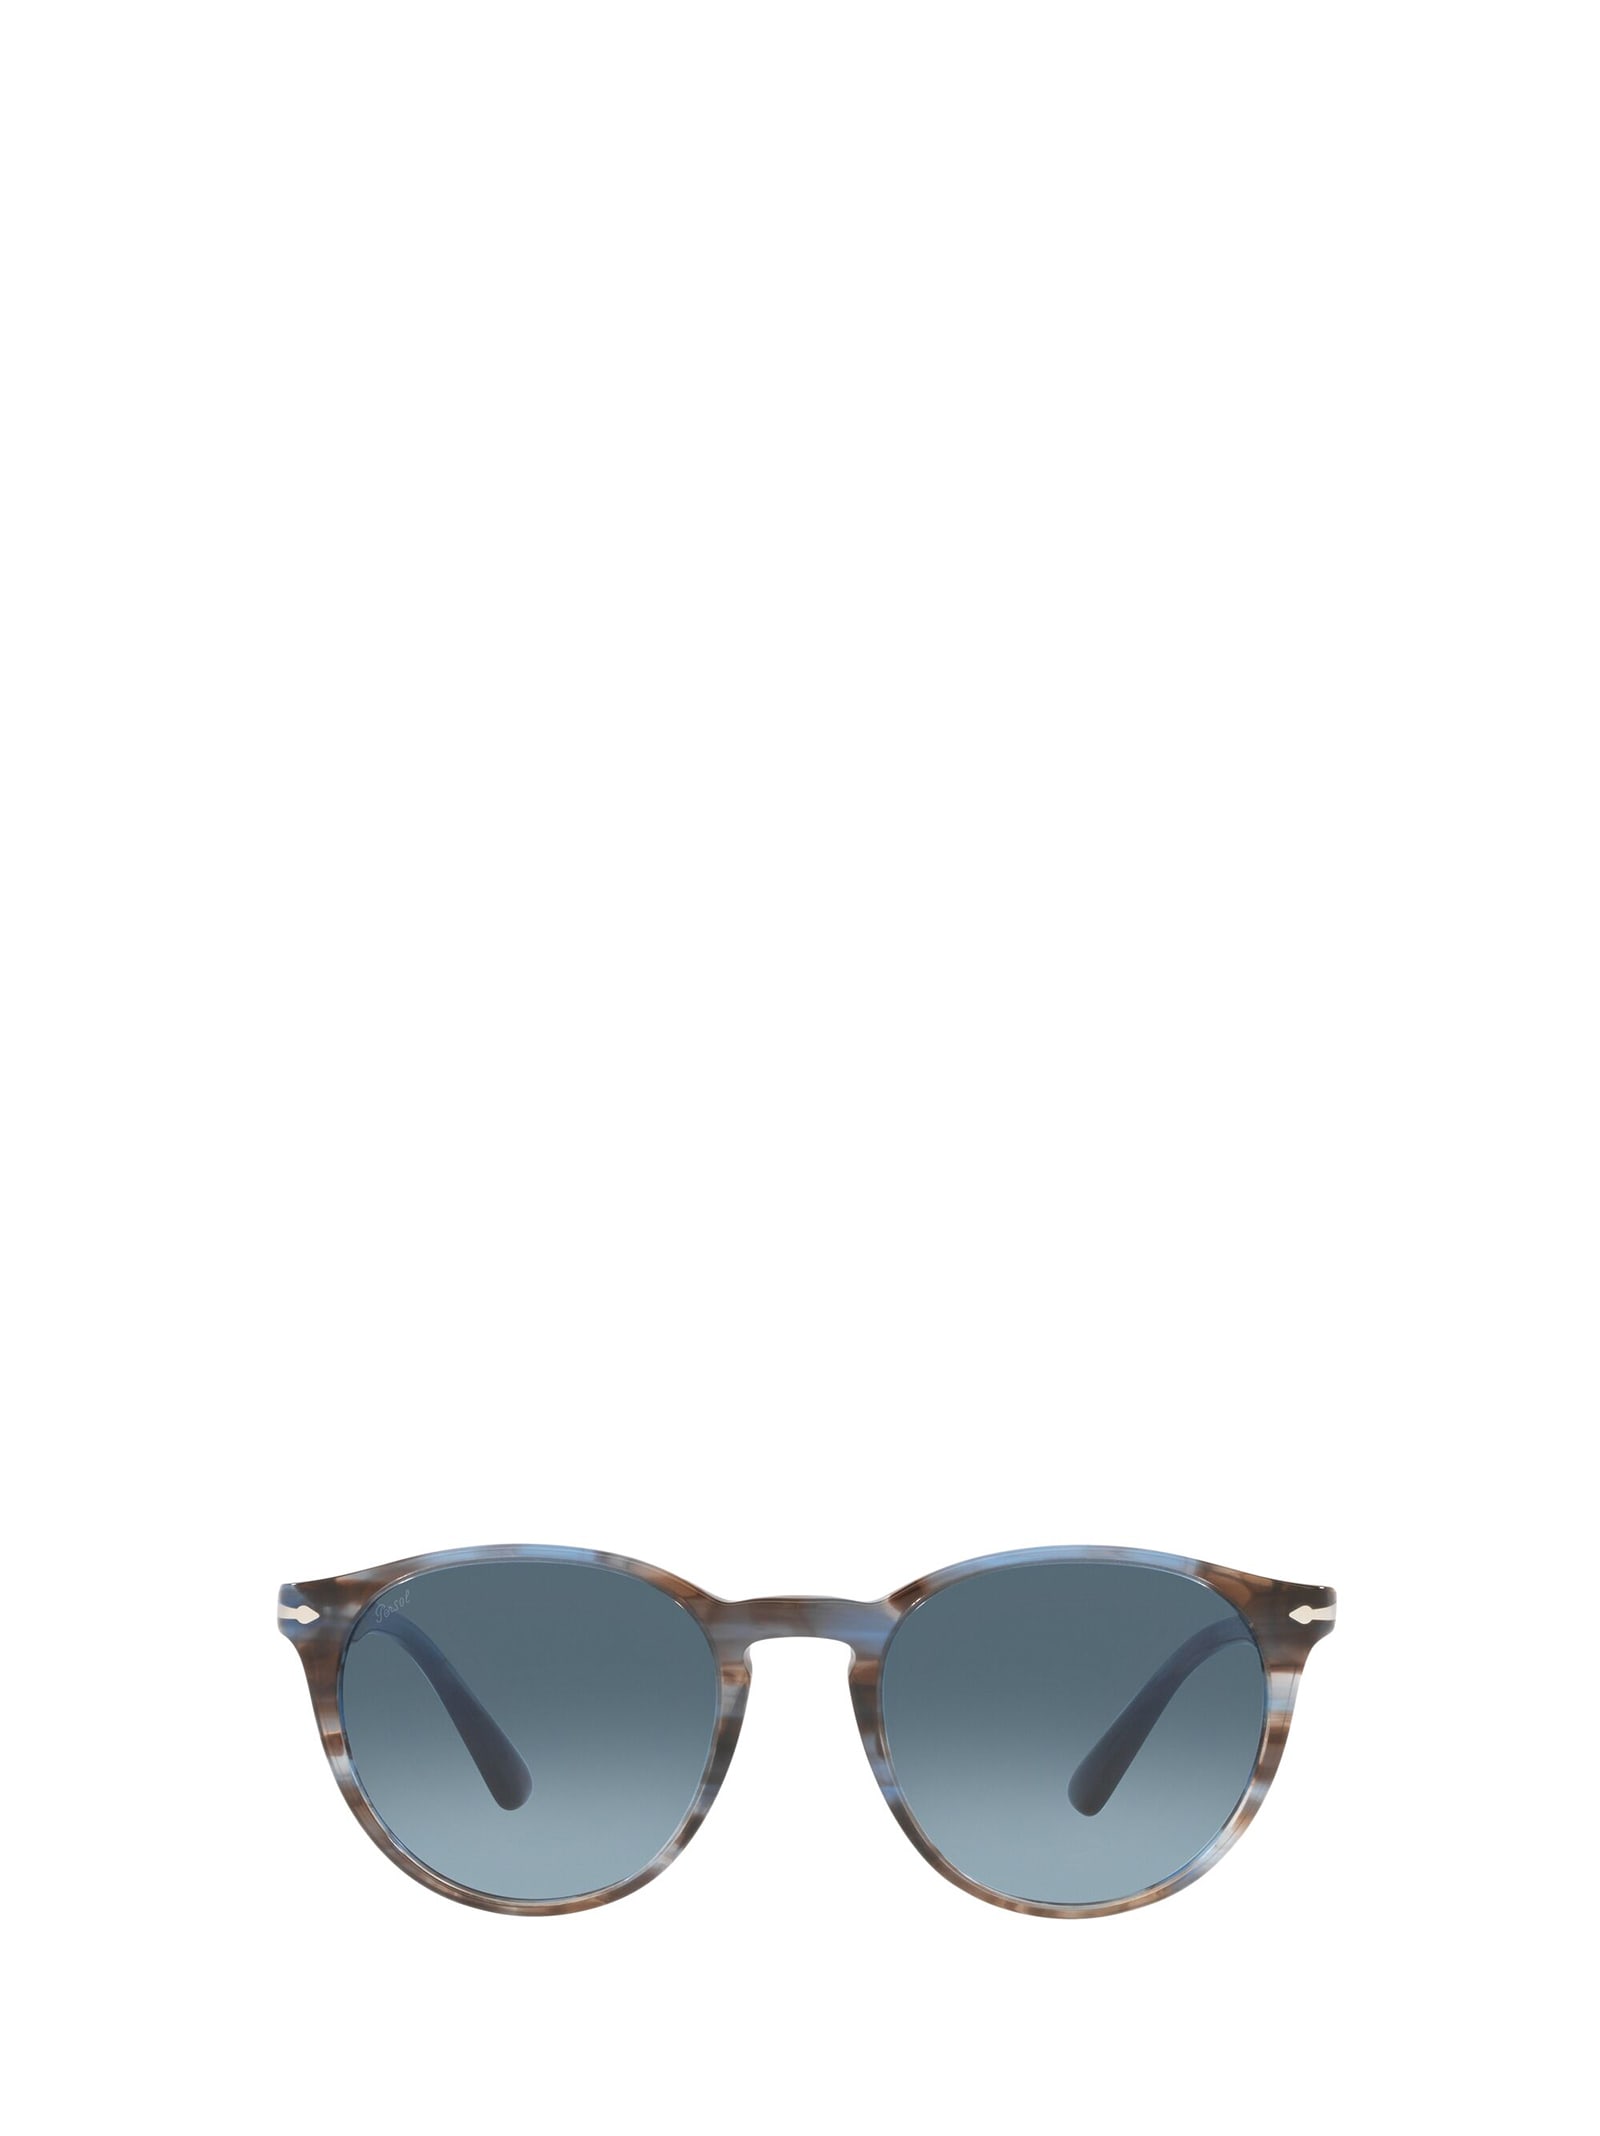 Persol Po3152s Striped Blue Sunglasses